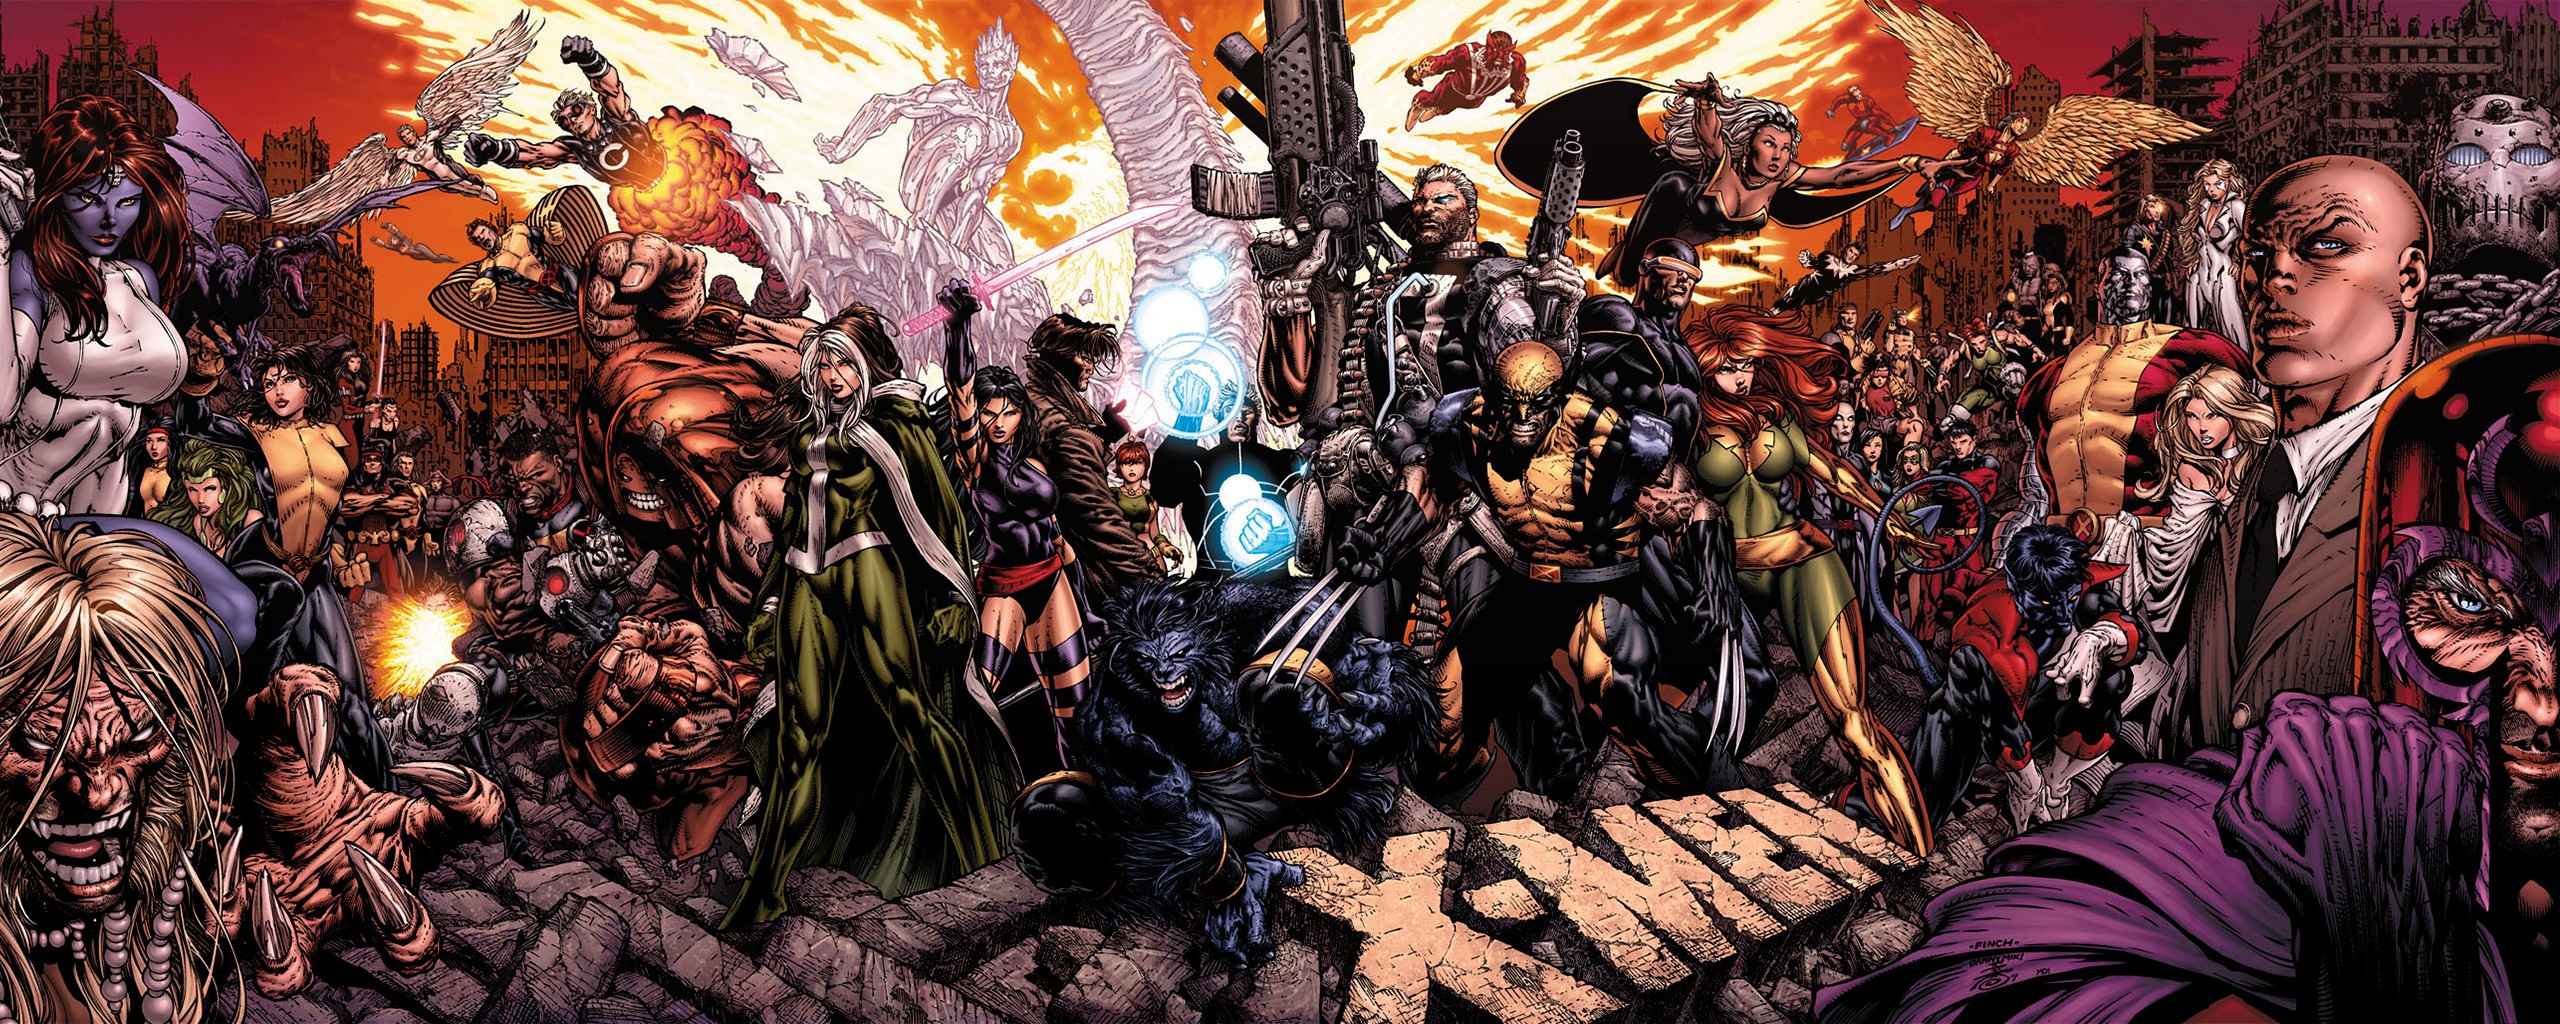 X Men, Comics, Comic Books, Marvel Comics Wallpaper